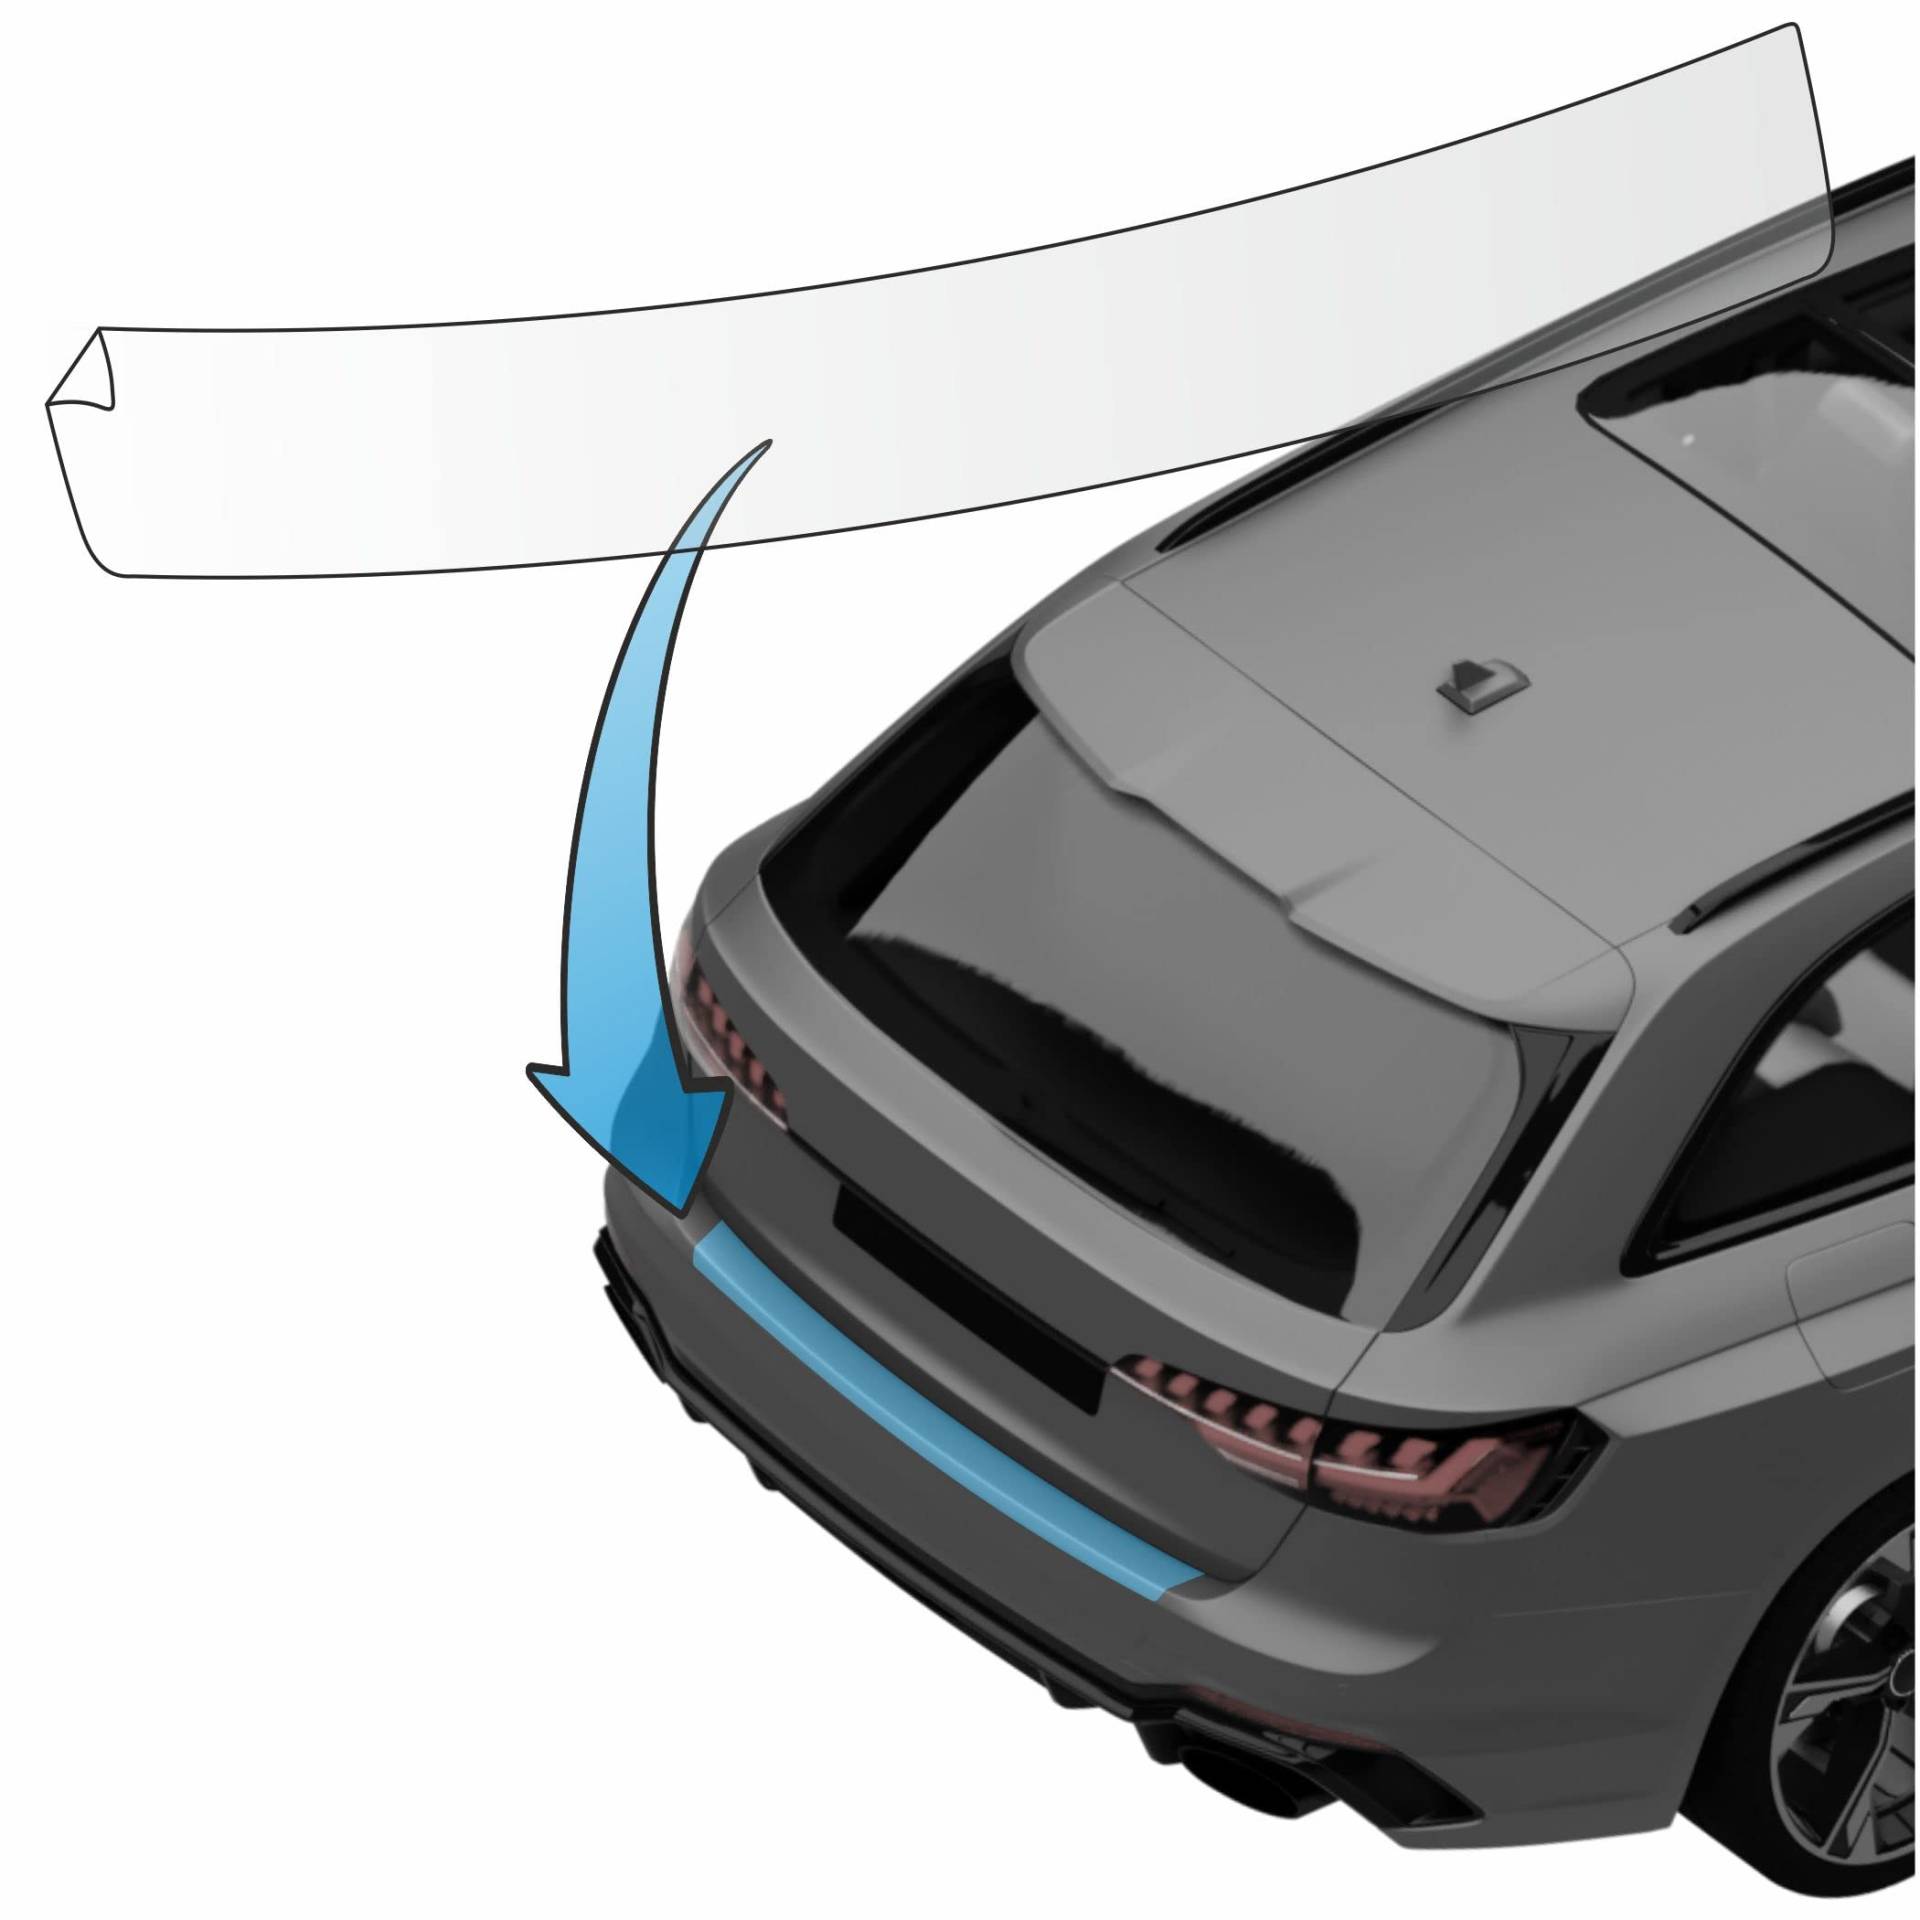 MisterLacky – Lackschutzfolie mit Rakel als Ladekantenschutz Folie passend für Audi A7 Sportback (II) Typ 4K/C8 ab BJ 2018 in transparent (240µm) von Lackschutzshop